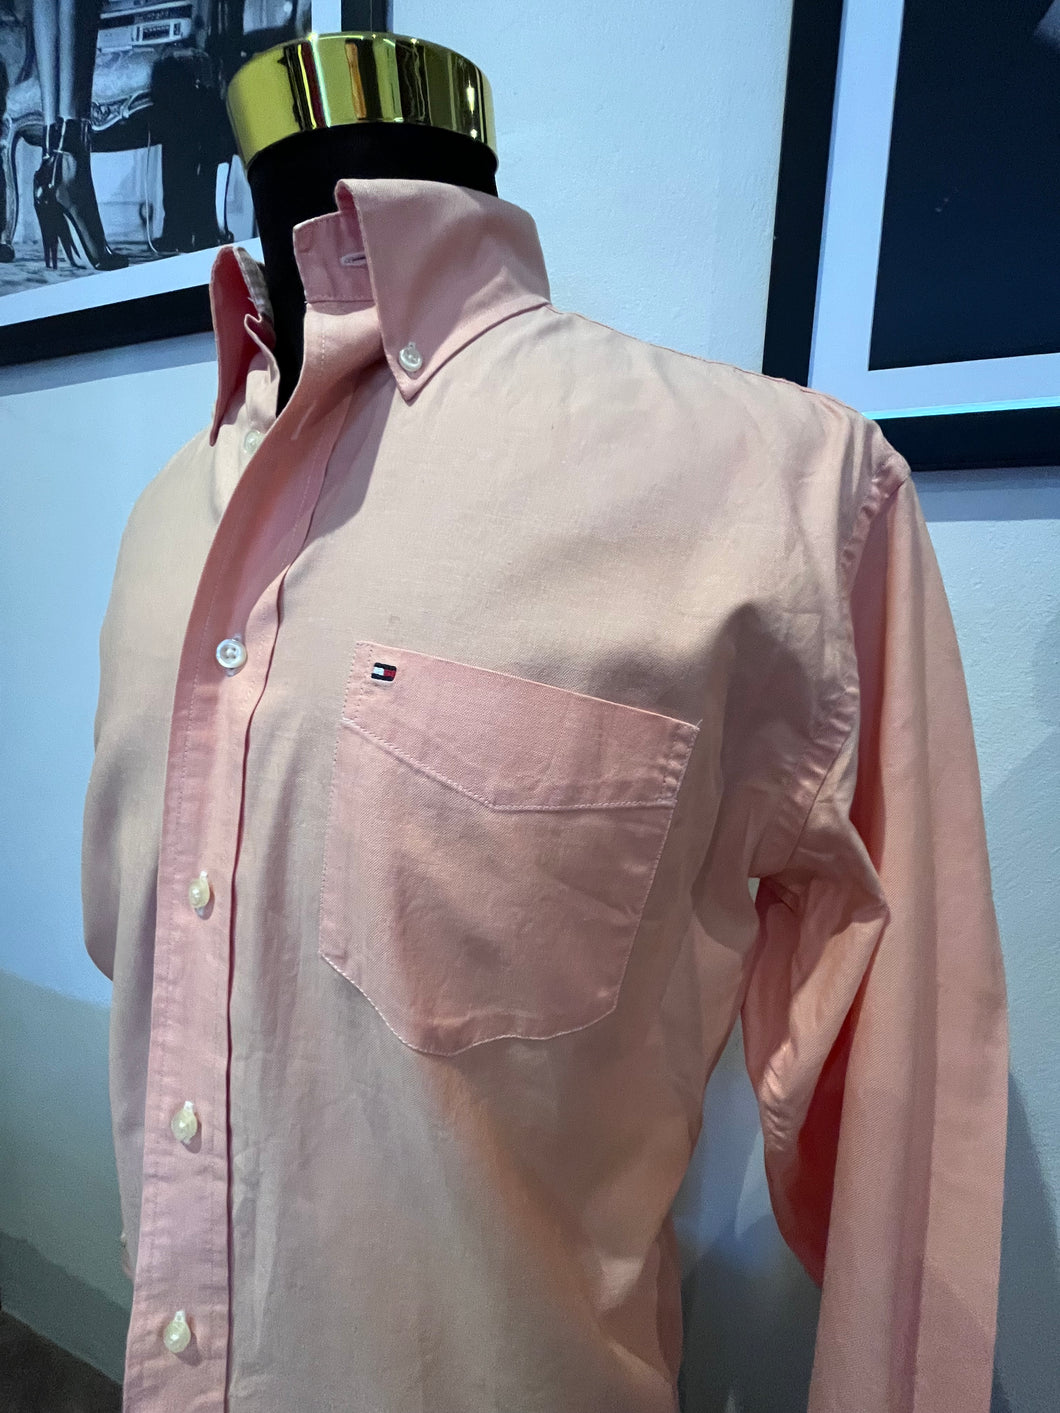 Tommy Hilfiger 100% Cotton Orange Shirt Slim Fit Size Medium Button Down Collar